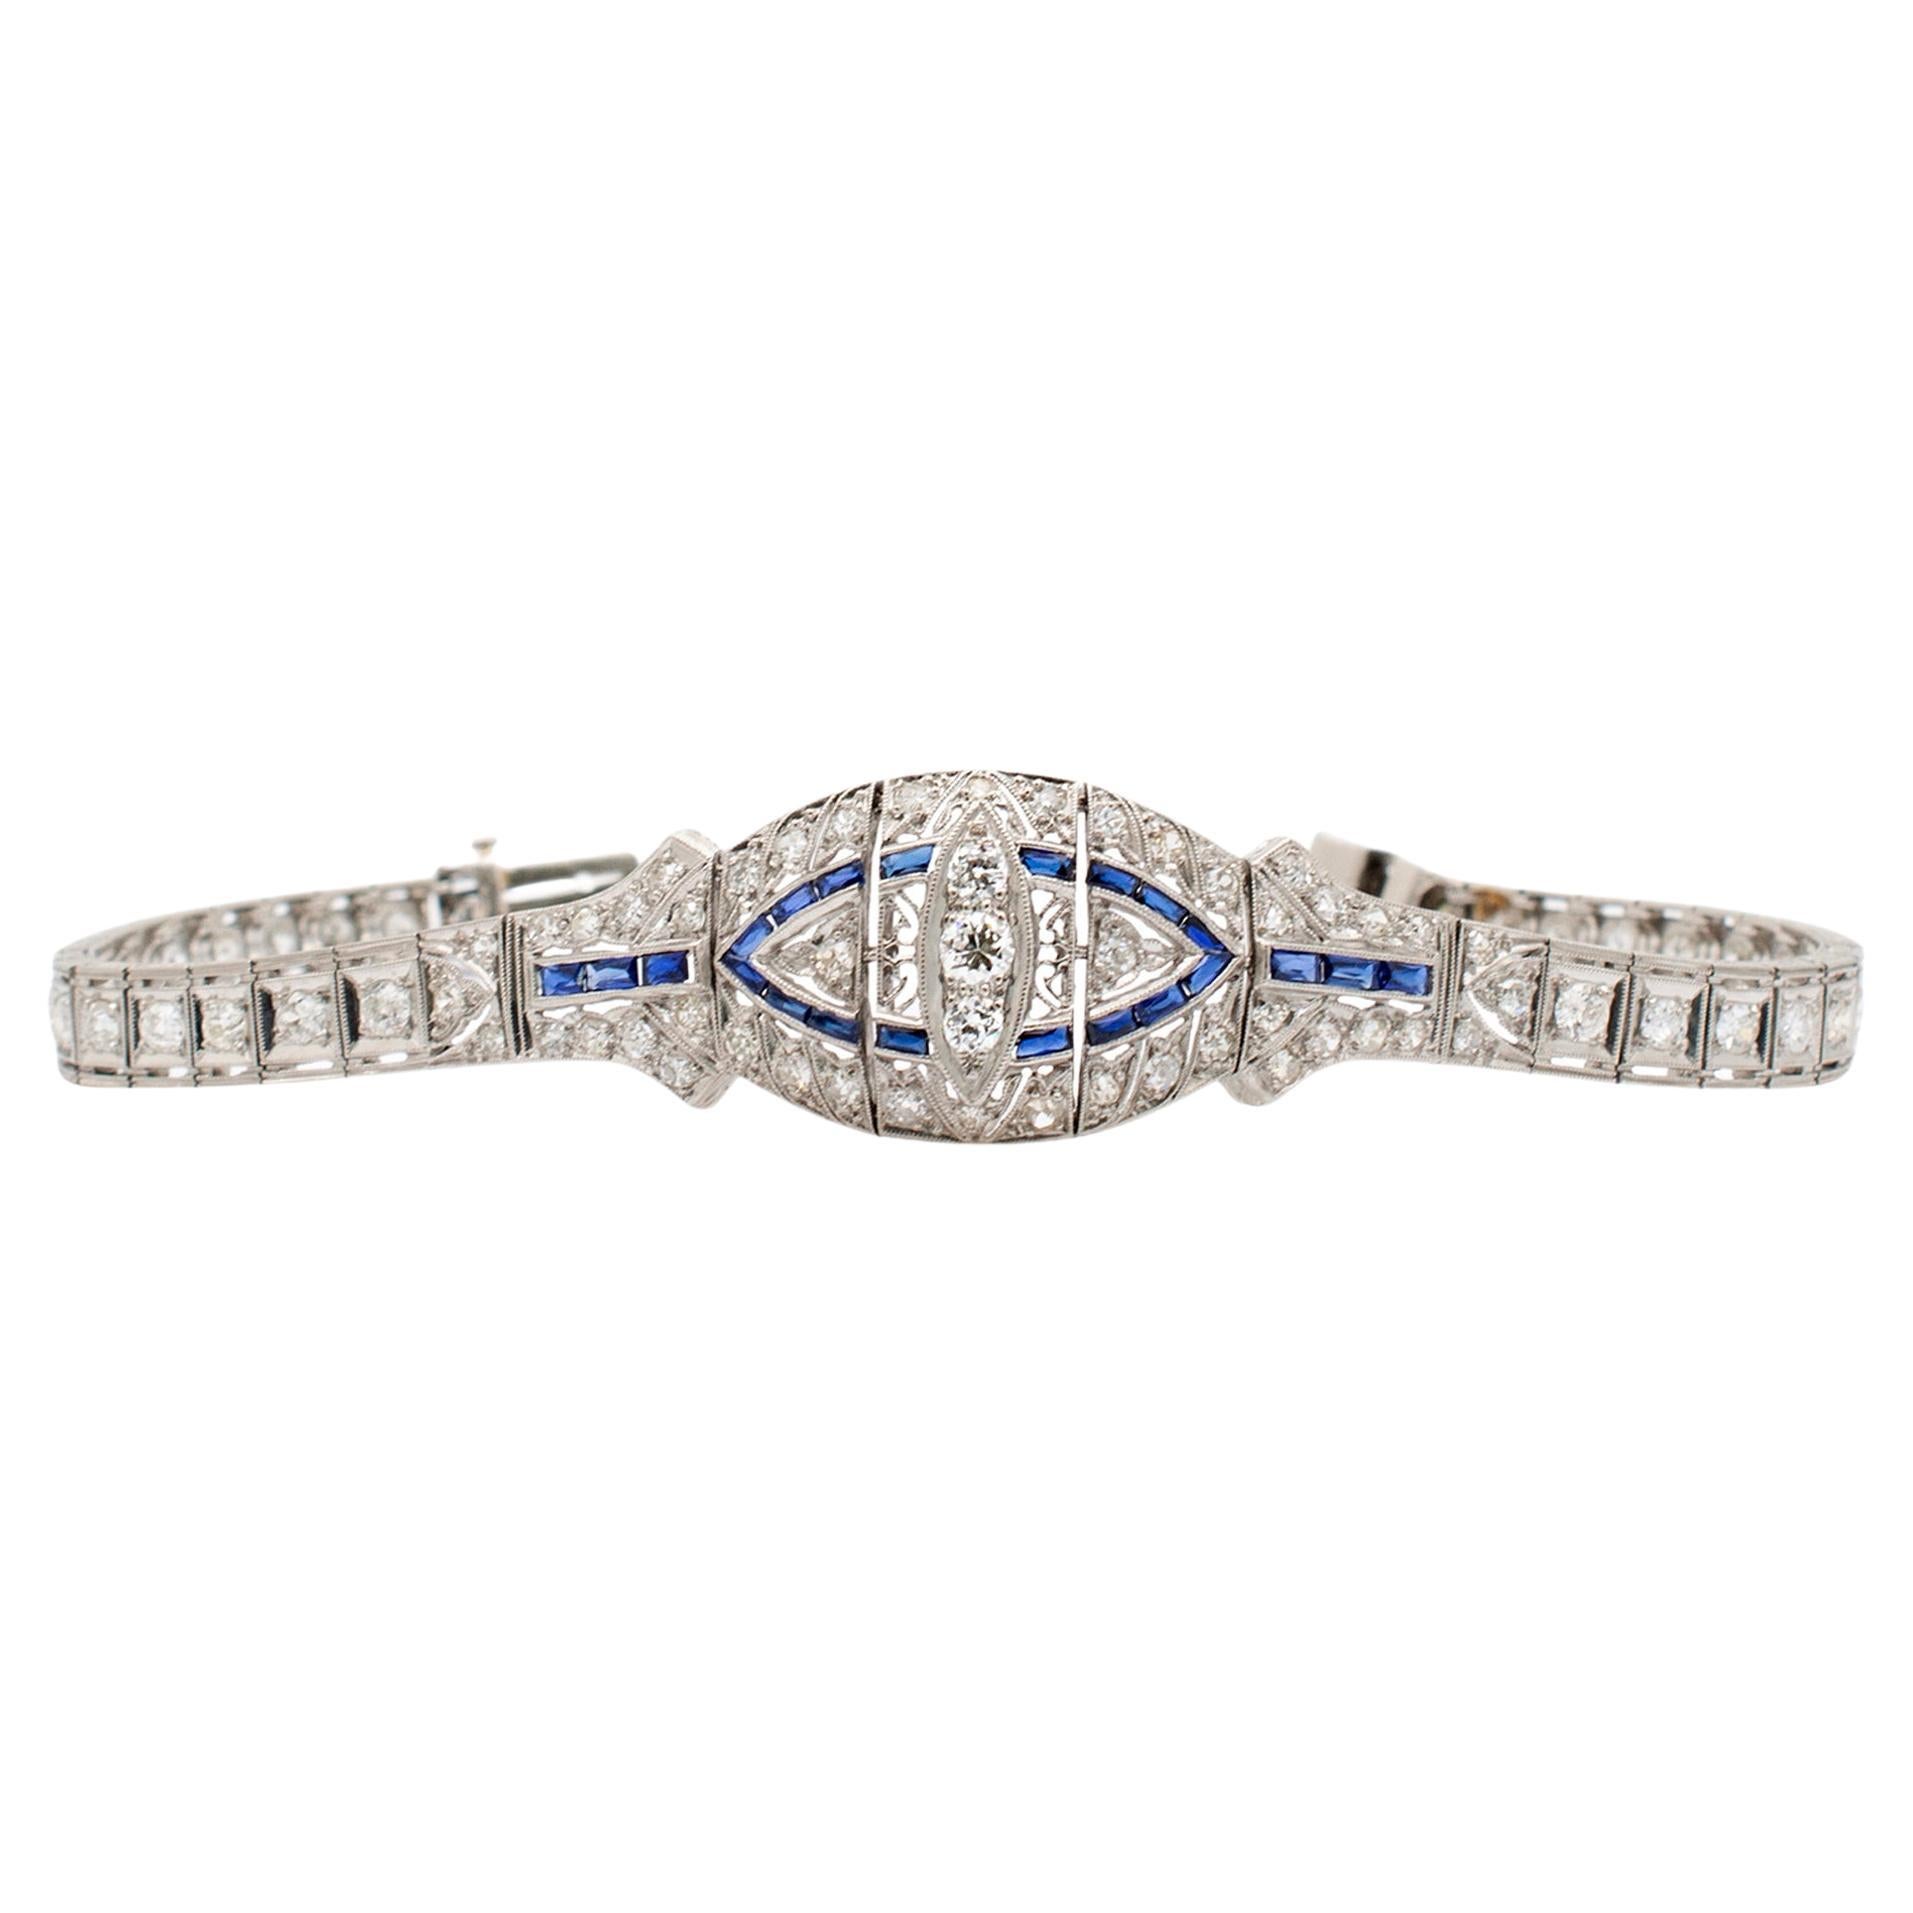 Antique Art Deco Platinum Diamonds Sapphires Cocktail Link Bracelet